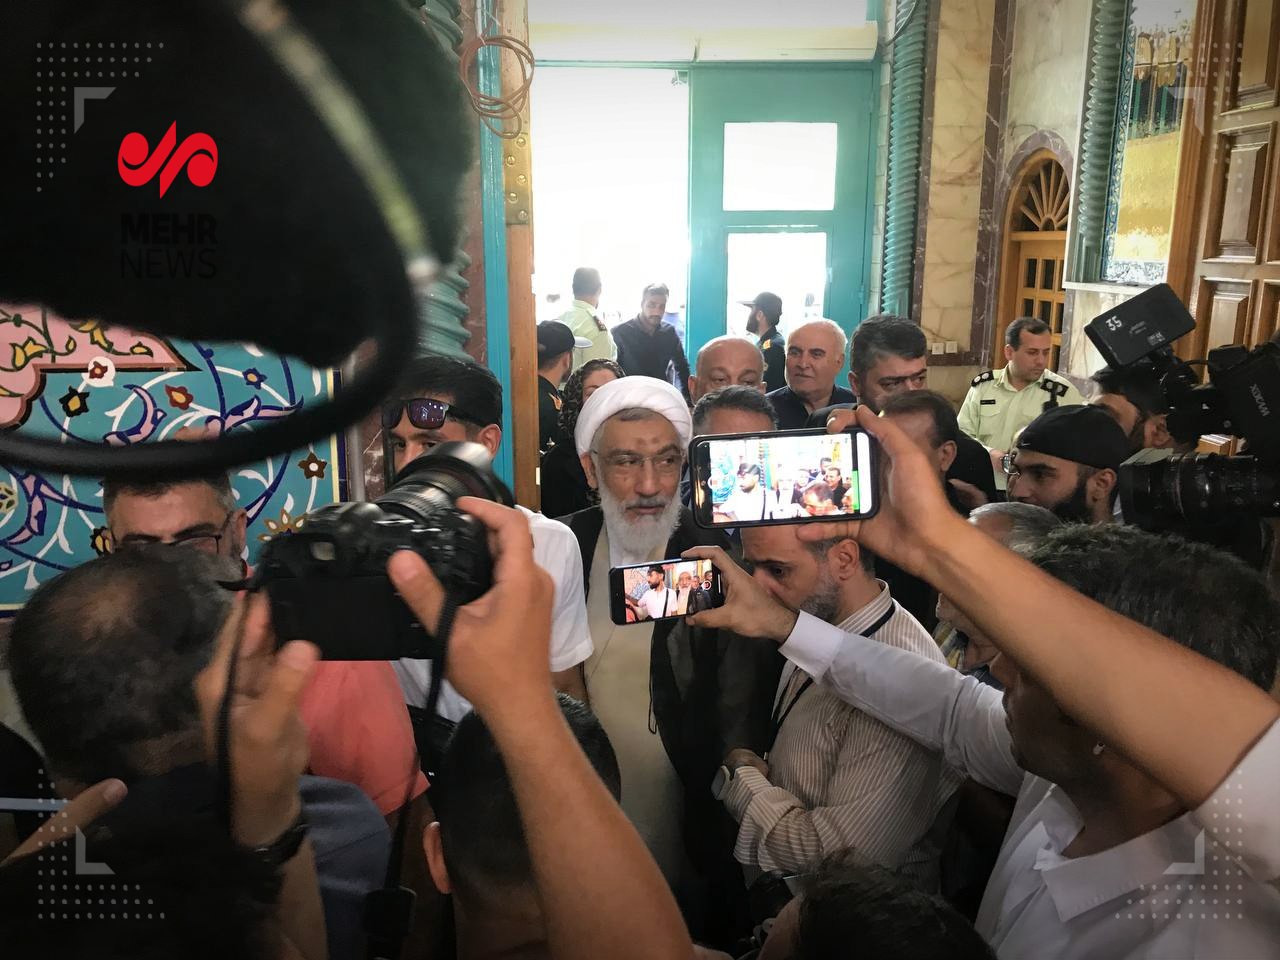 پورمحمدی در حسینیه ارشاد رأی خود را به صندوق انداخت +عکس